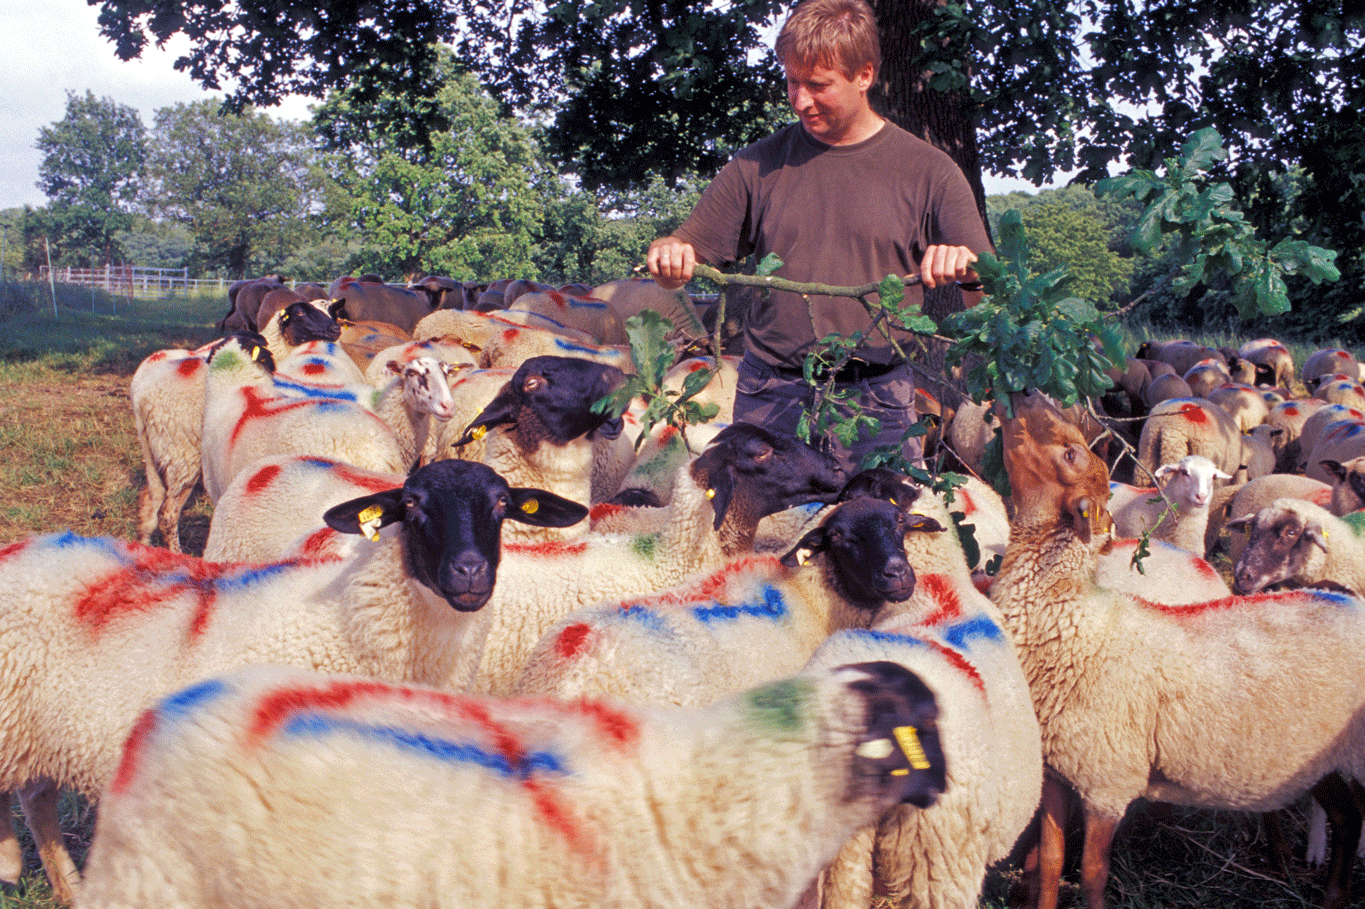 Ein Mann steht mit dem Gesicht zur Kamera in einer Herde von Schafen, die blaue und rote Markierungen auf dem Fell haben. Klick führt zu Großansicht in neuem Fenster.